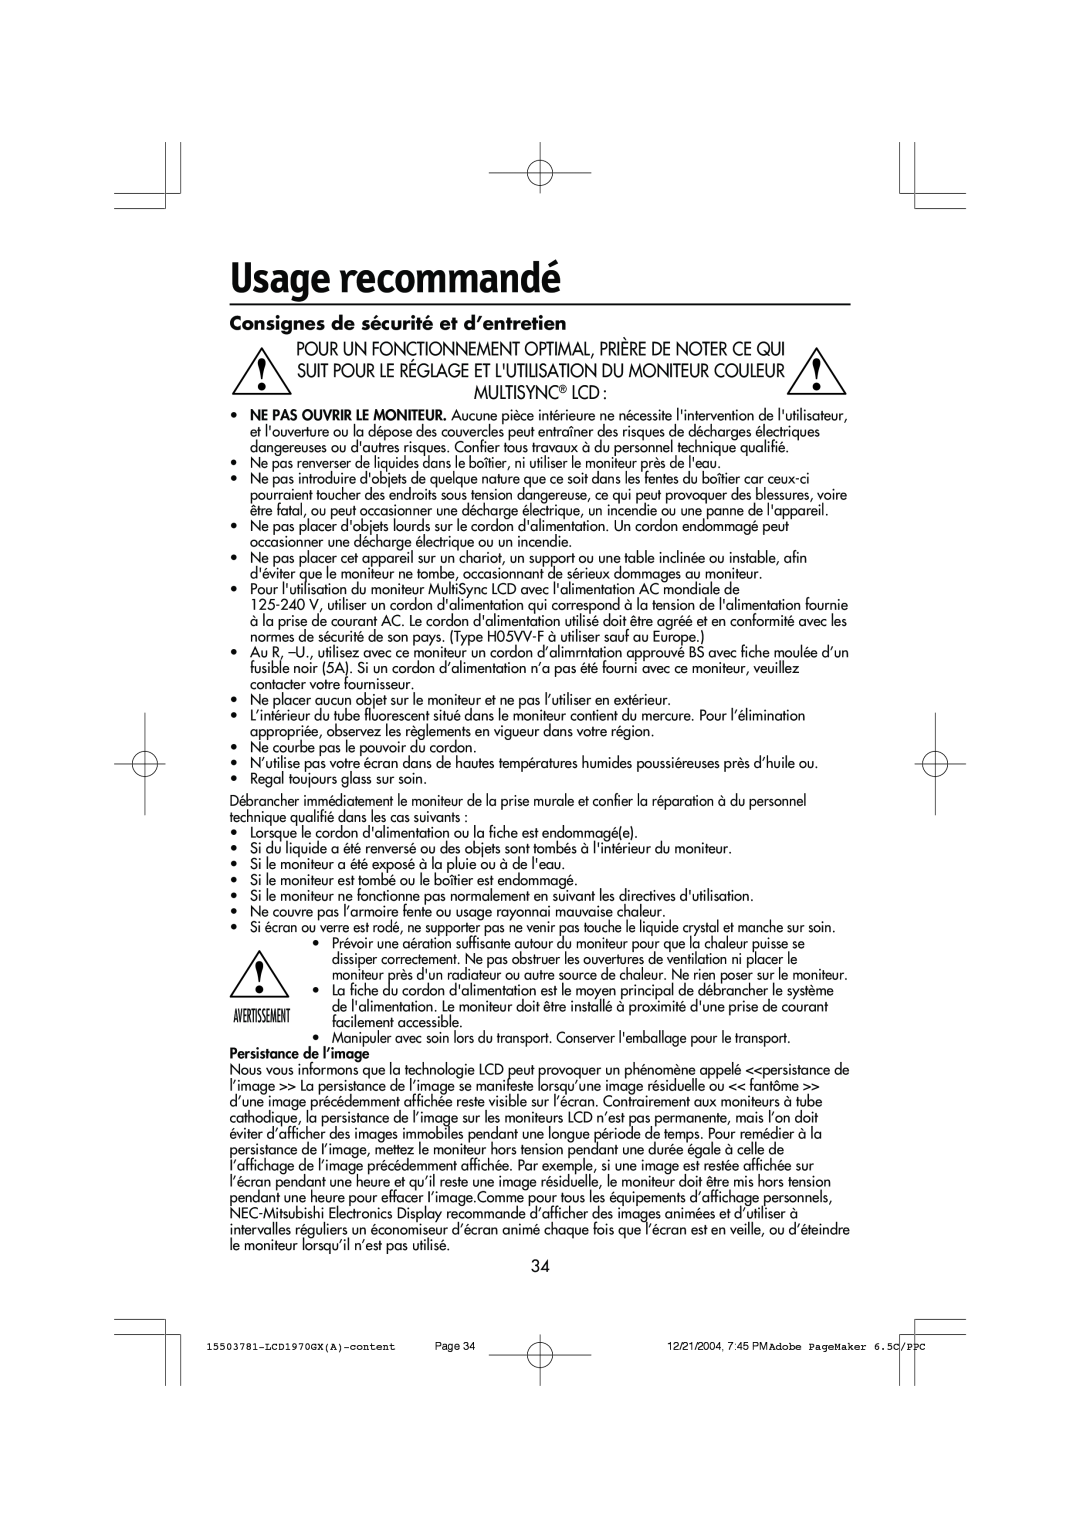 NEC LCD1970GX user manual Usage recommandé, Consignes de sécurité et d’entretien 